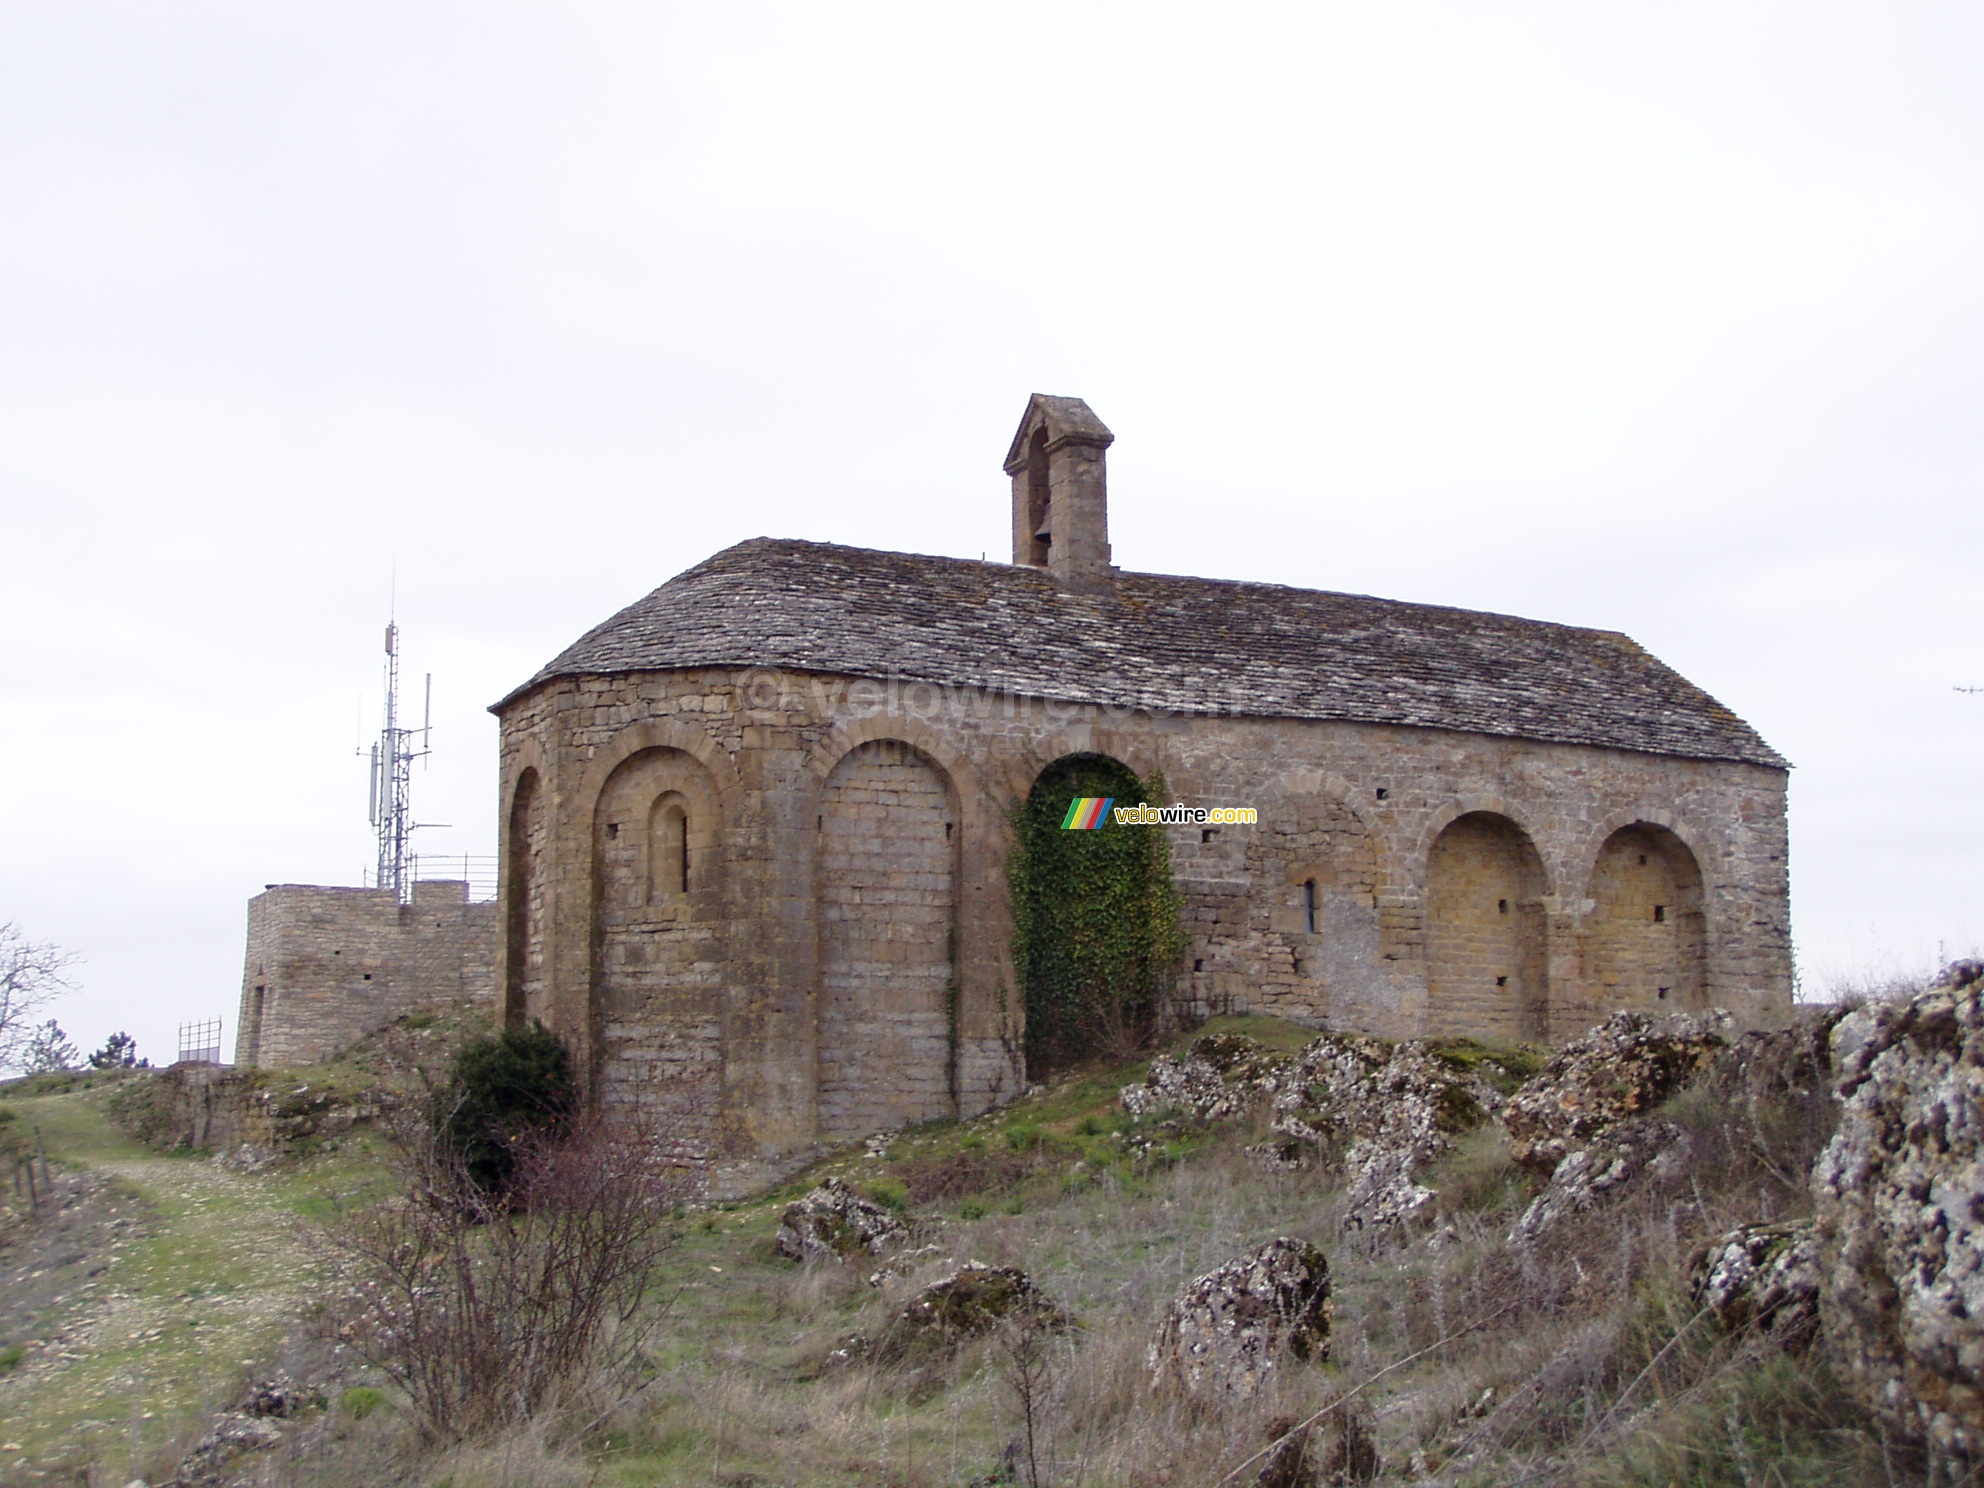 The chapel of St. Georges de Luzenon